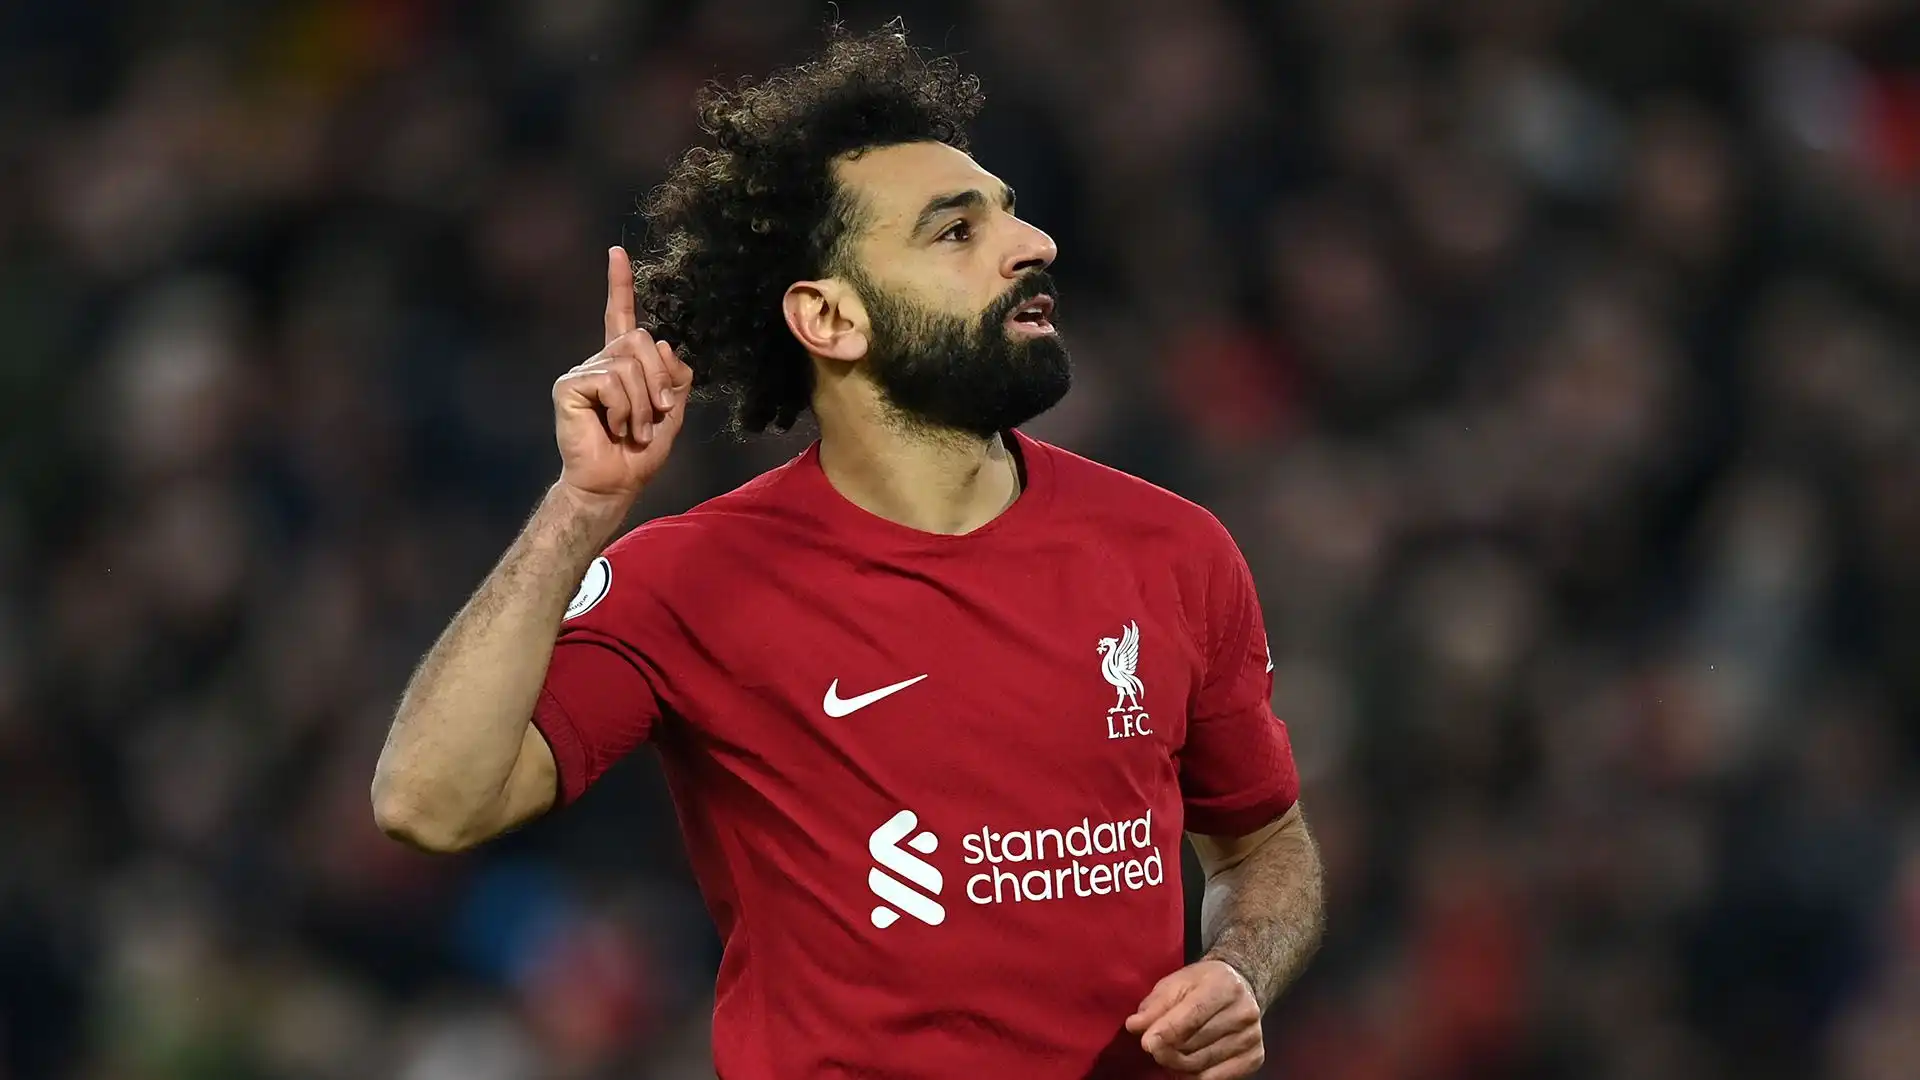 Mohamed Salah: l'attaccante egiziano lascerà il Liverpool in estate e secondo indiscrezioni avrebbe già firmato un precontratto con un club saudita